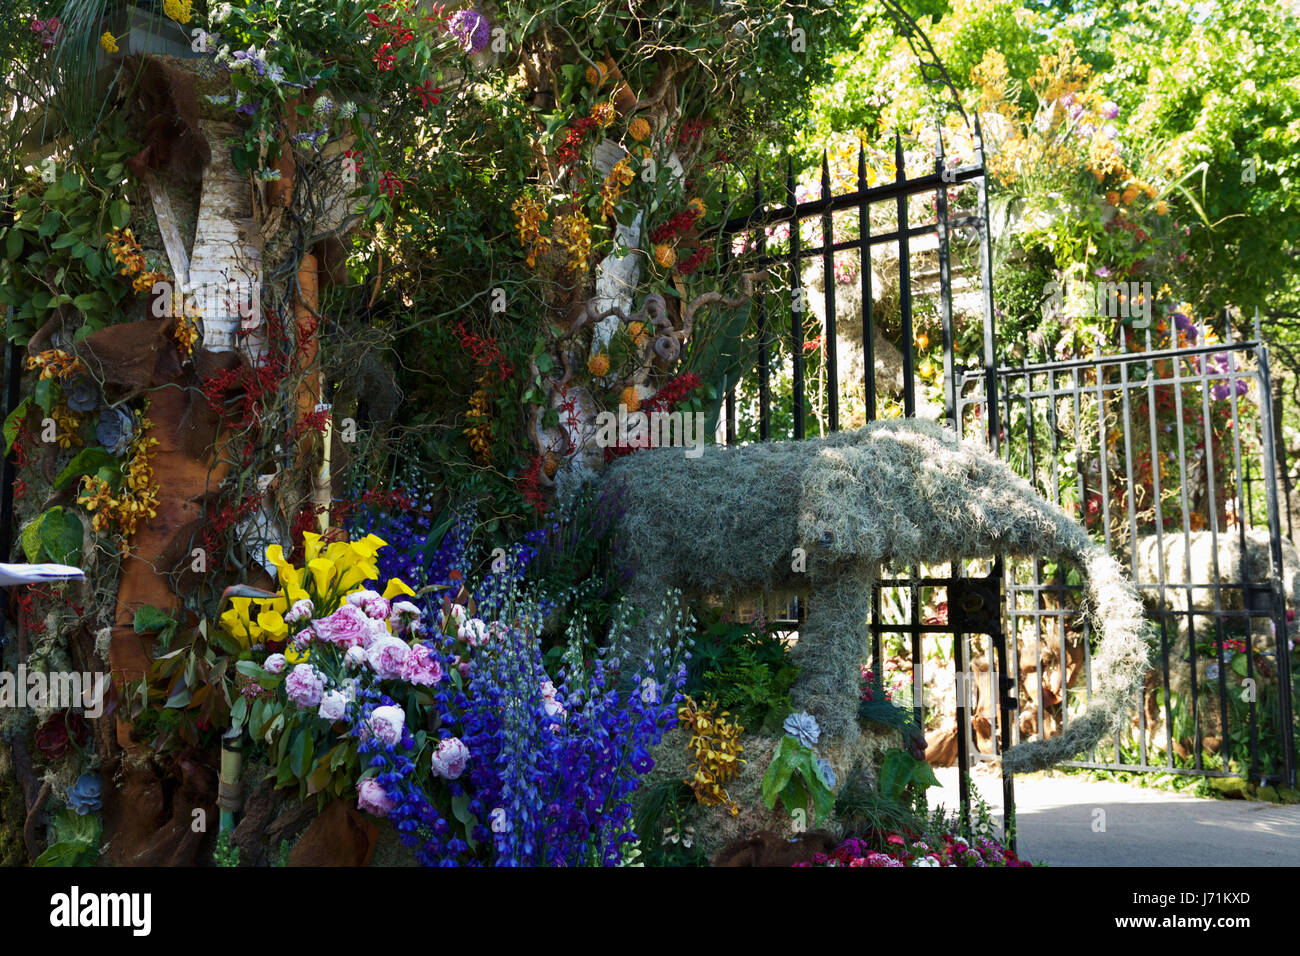 RHS Chelsea Flower Show, London, UK. 22 mai, 2017. Les portes d'entrée Chelsea Flower show, montrant une belle fleur. La Chelsea Flower Show se déroule du 23 au 27 mai. Crédit : Tony Farrugia/Alamy Live News Banque D'Images